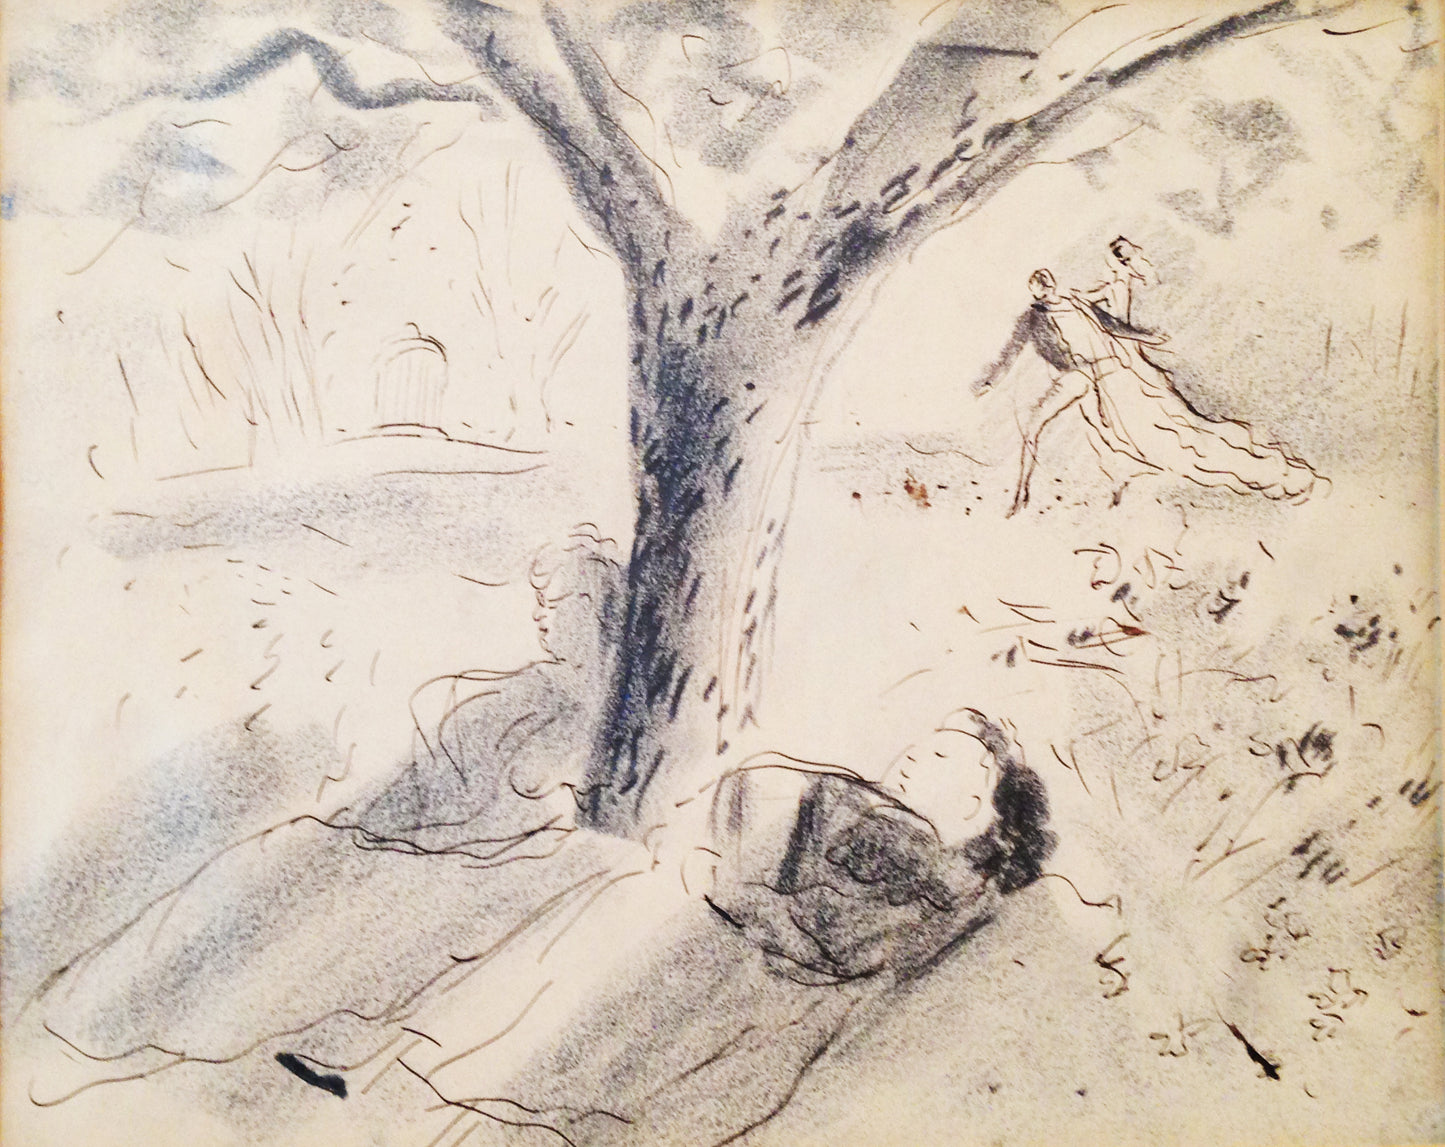 Marcel Vertes Drawing: People sleeping under the tree